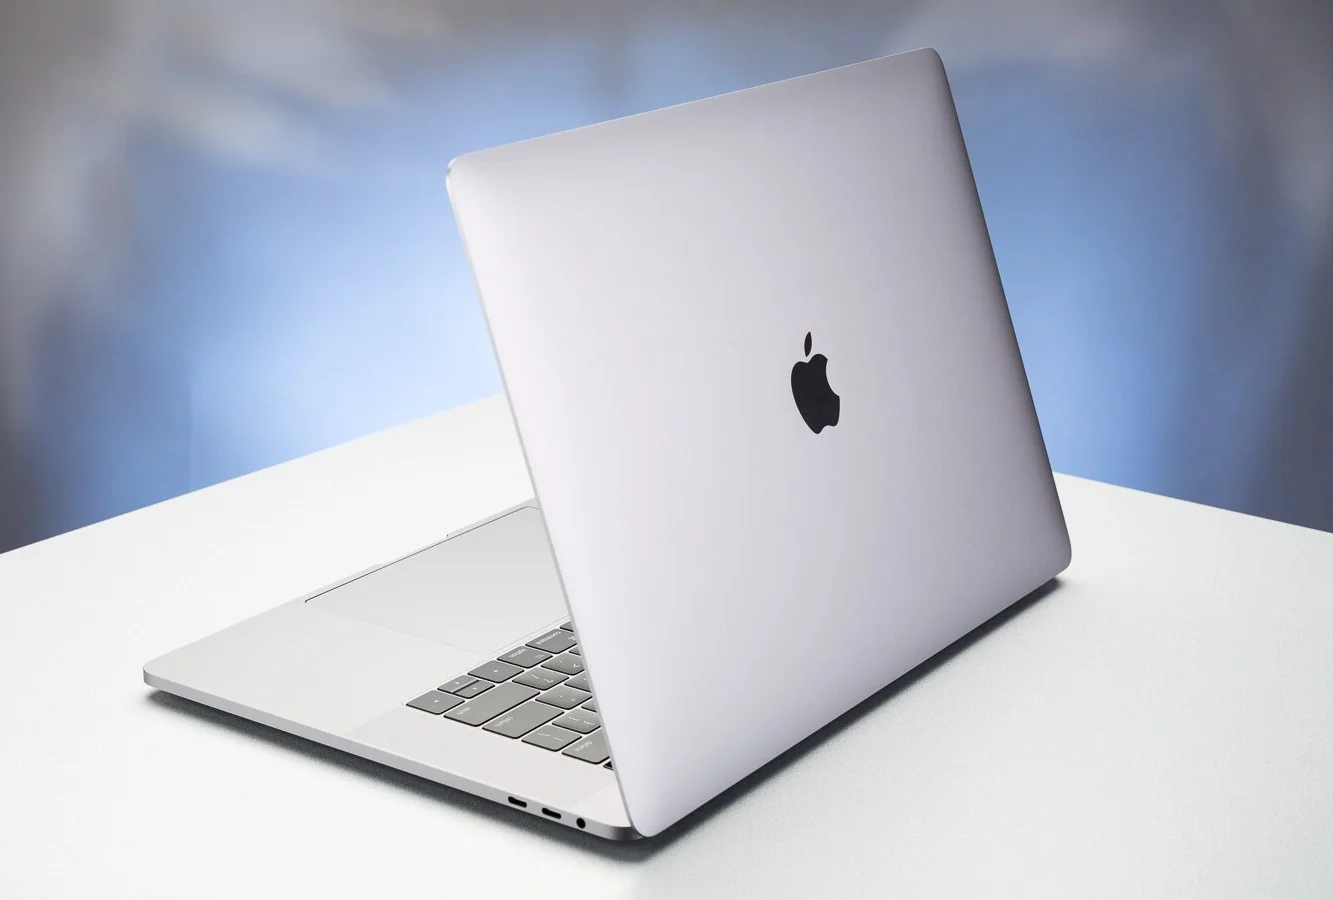 Apple-MacBook-Pro-15-2017 